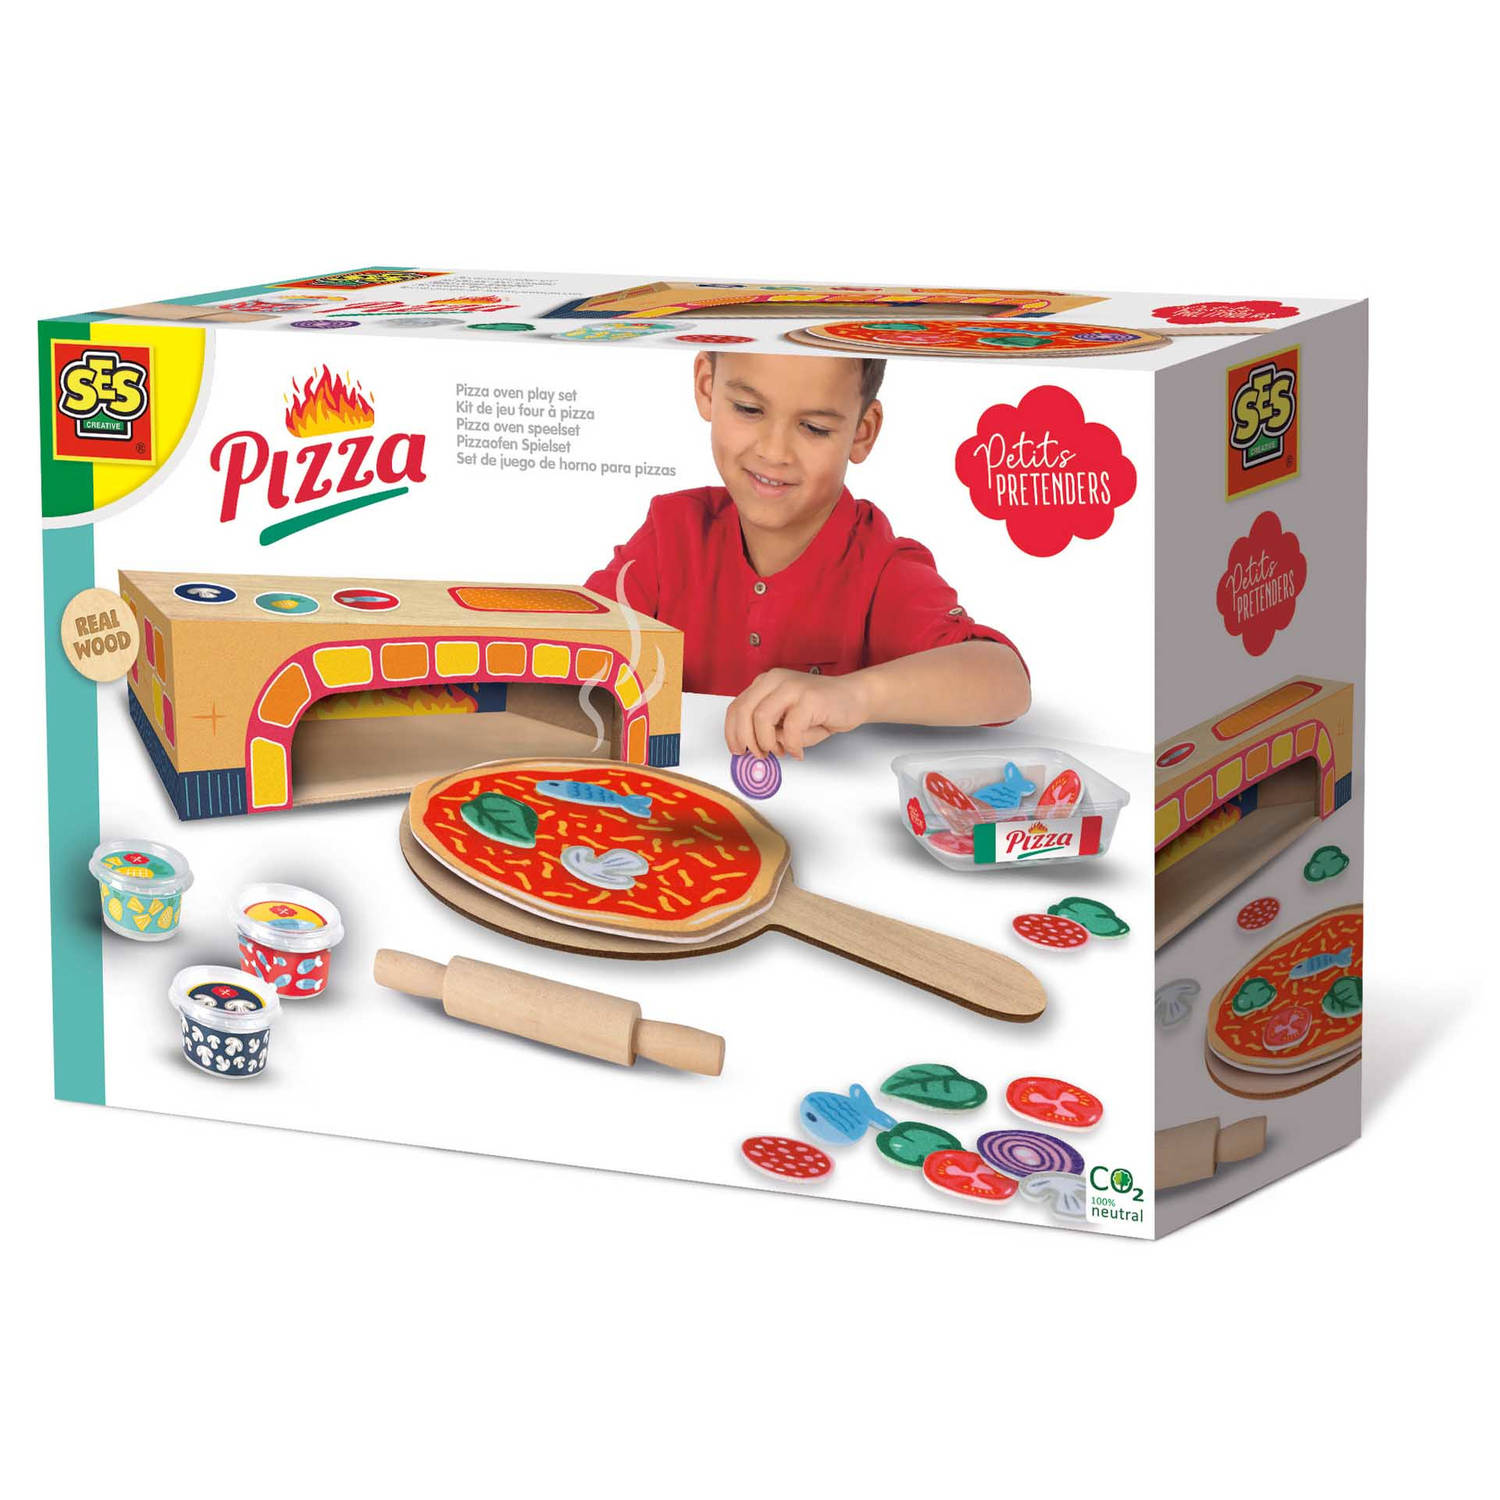 SES - Petits Pretenders - Pizza oven speelset - houten oven met pizza en ingrediënten